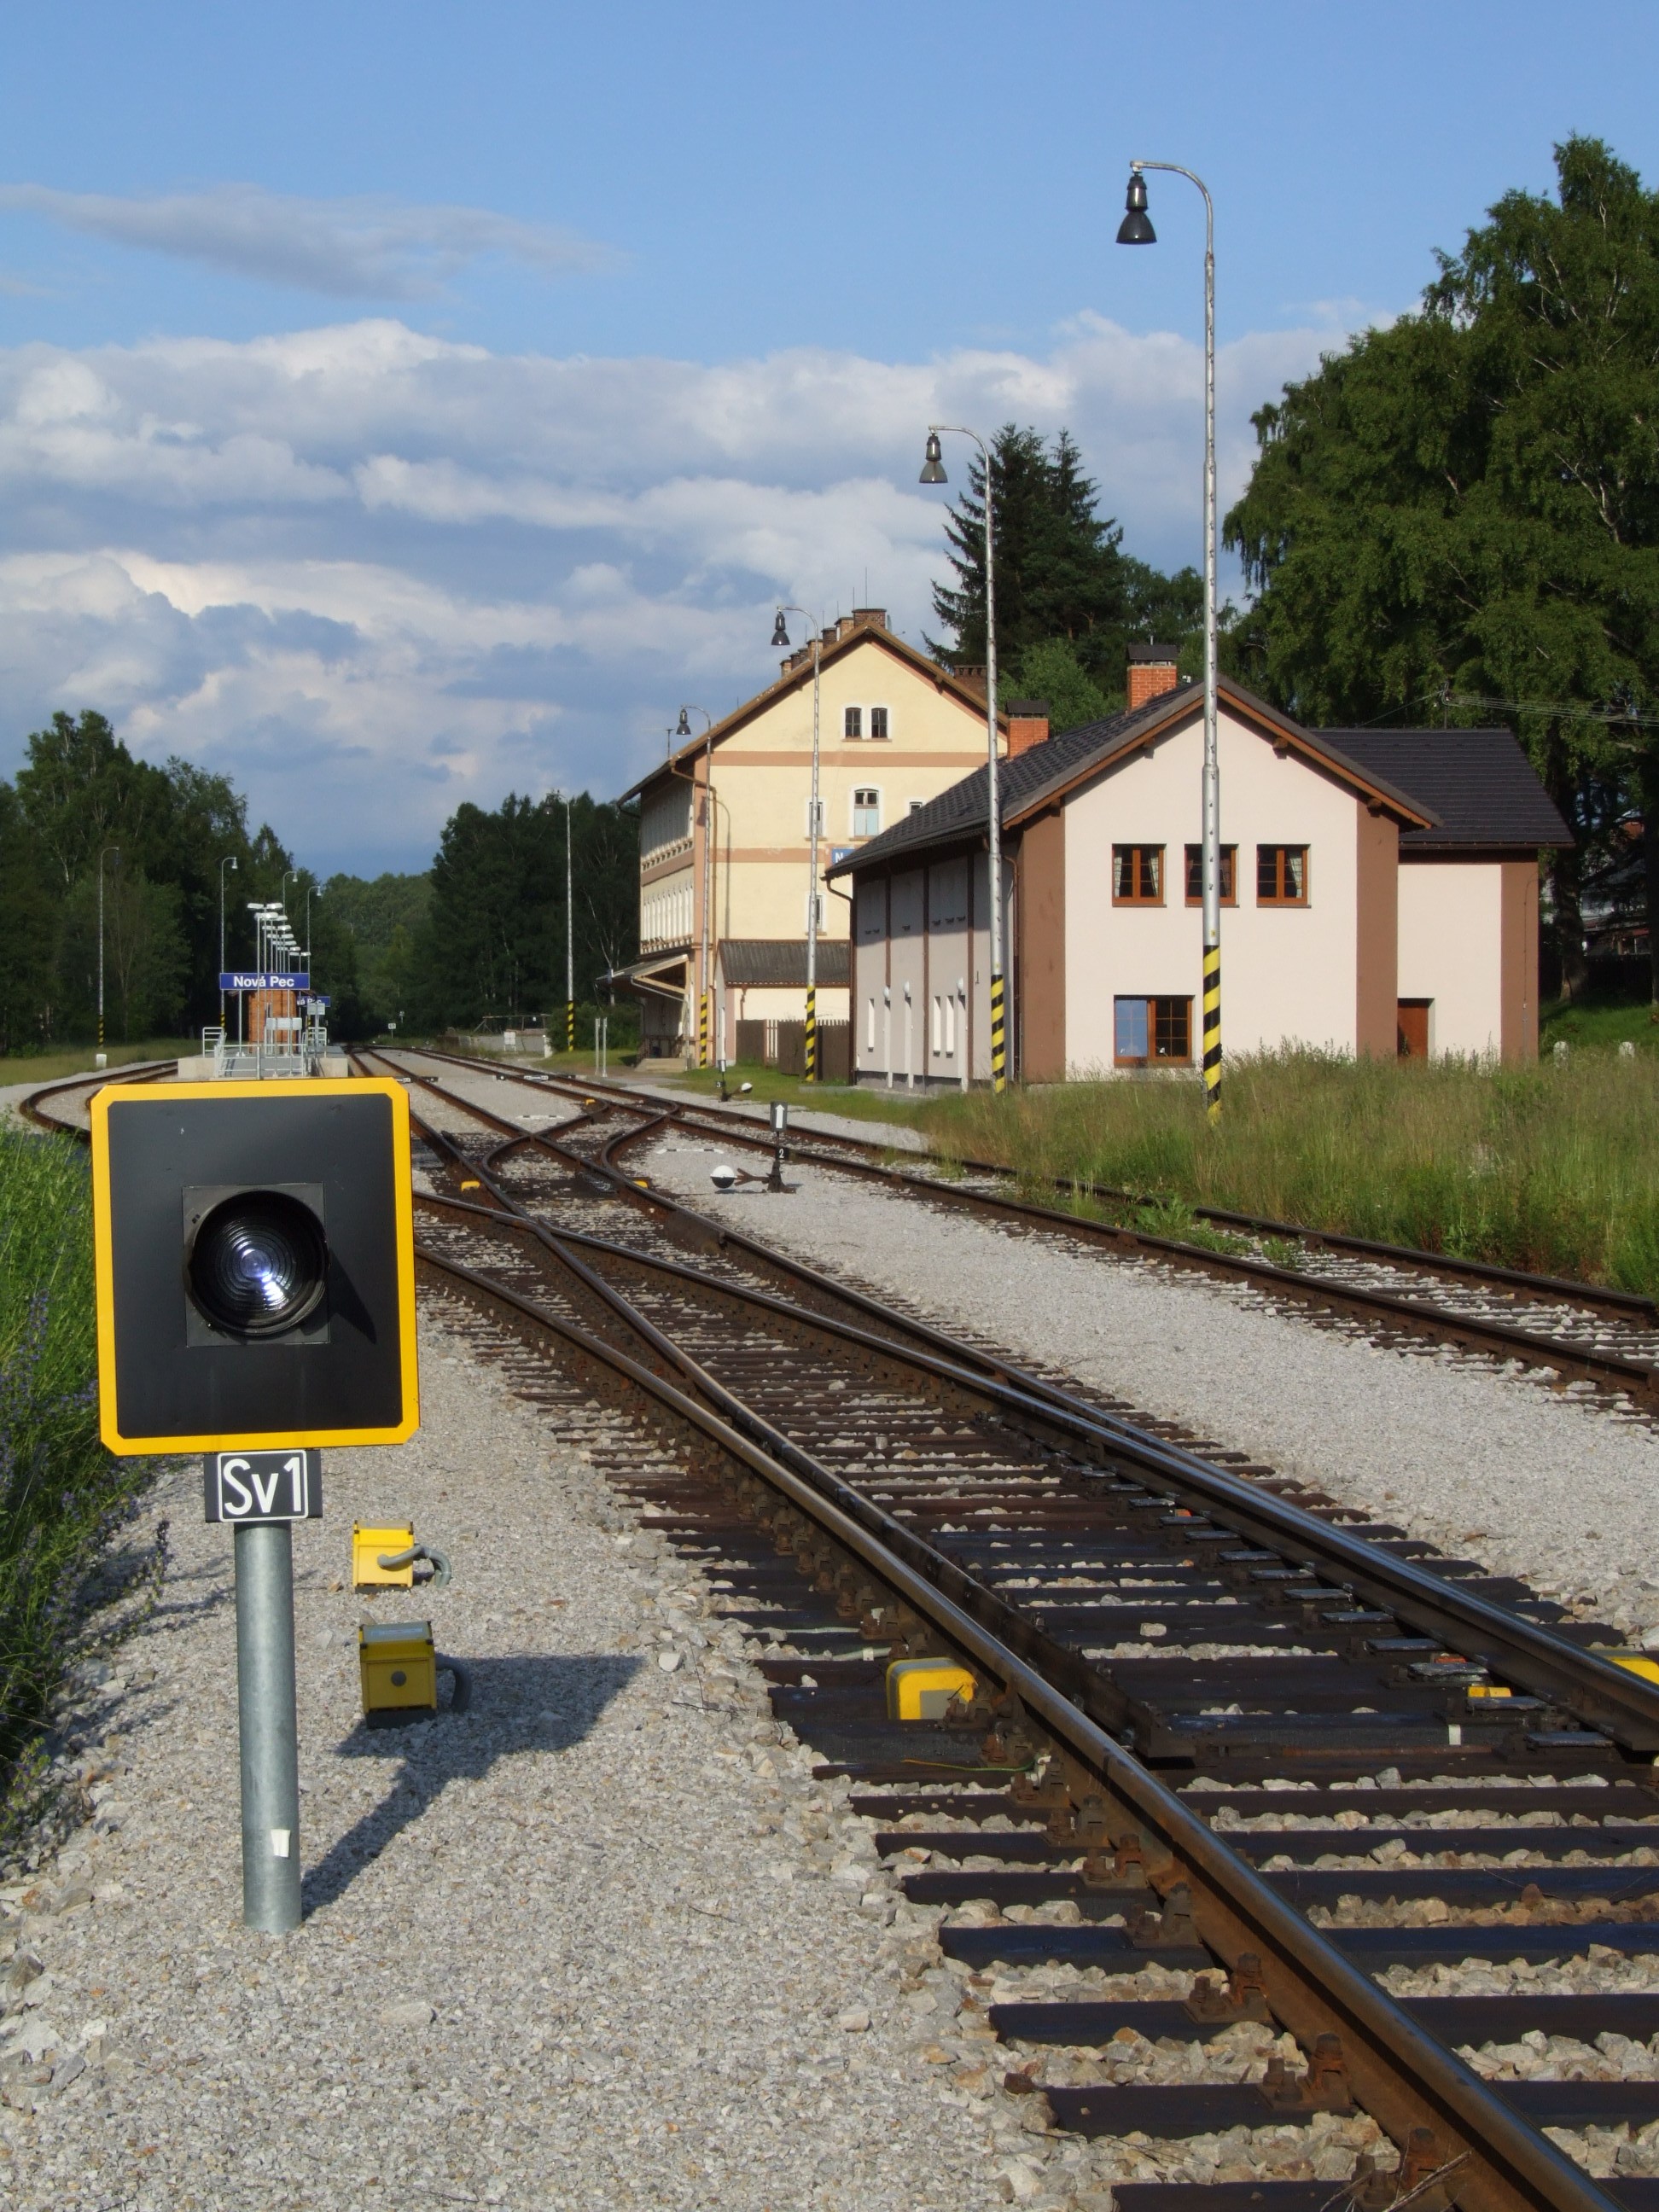 Nová Pec (Neuofen) - železniční stanice